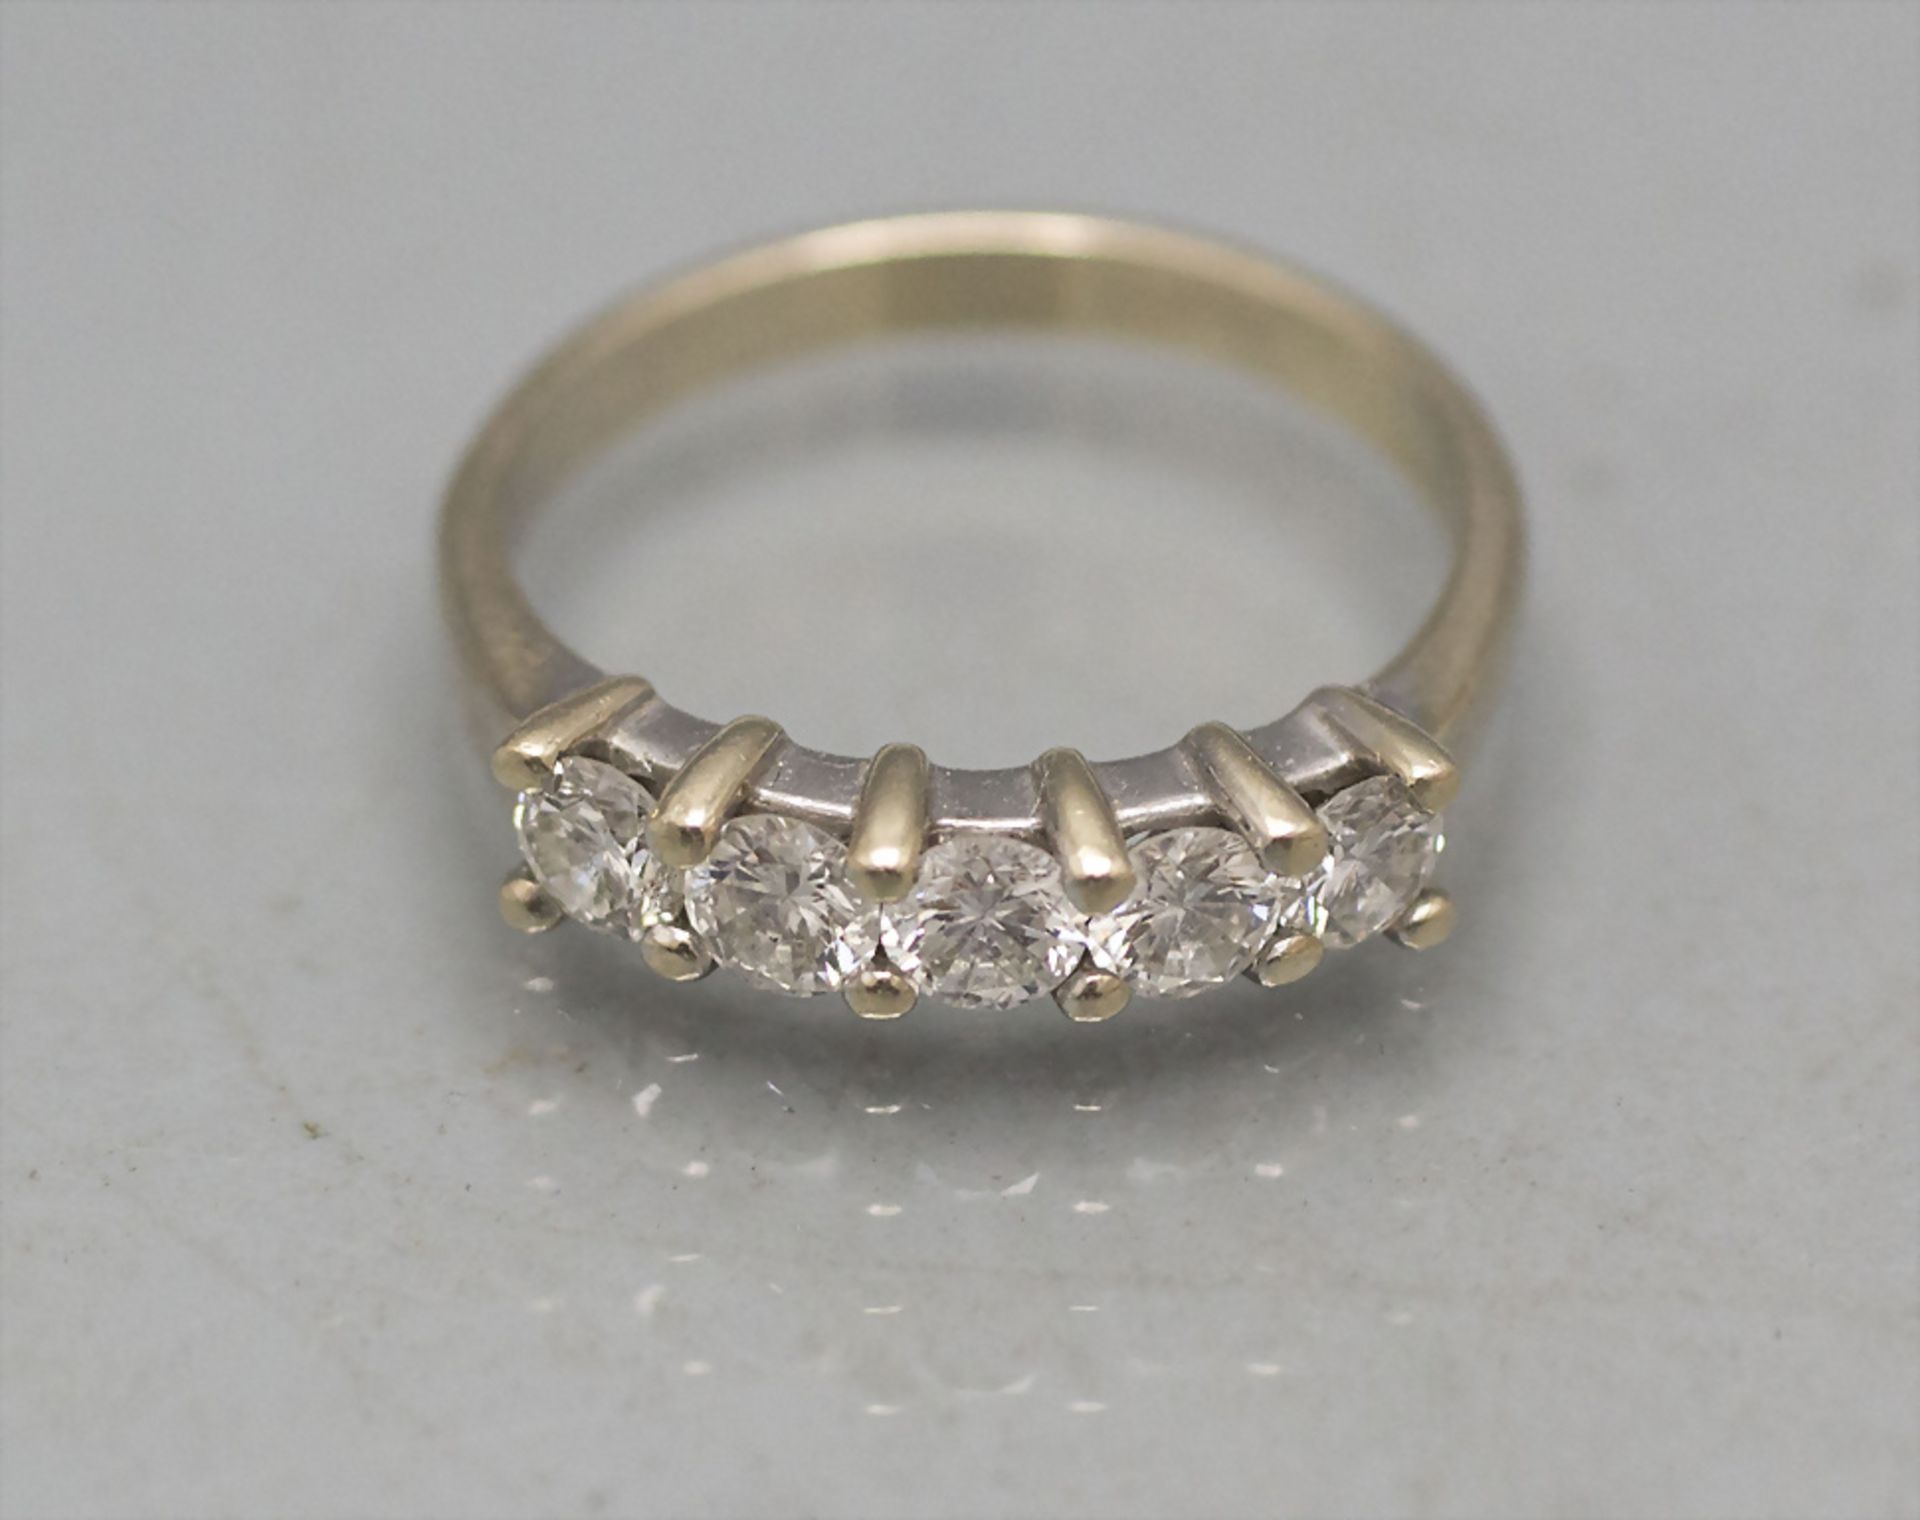 Damenring mit Brillanten / An 18 ct ladies gold ring with diamonds, Italien um, 1960 - Bild 2 aus 3